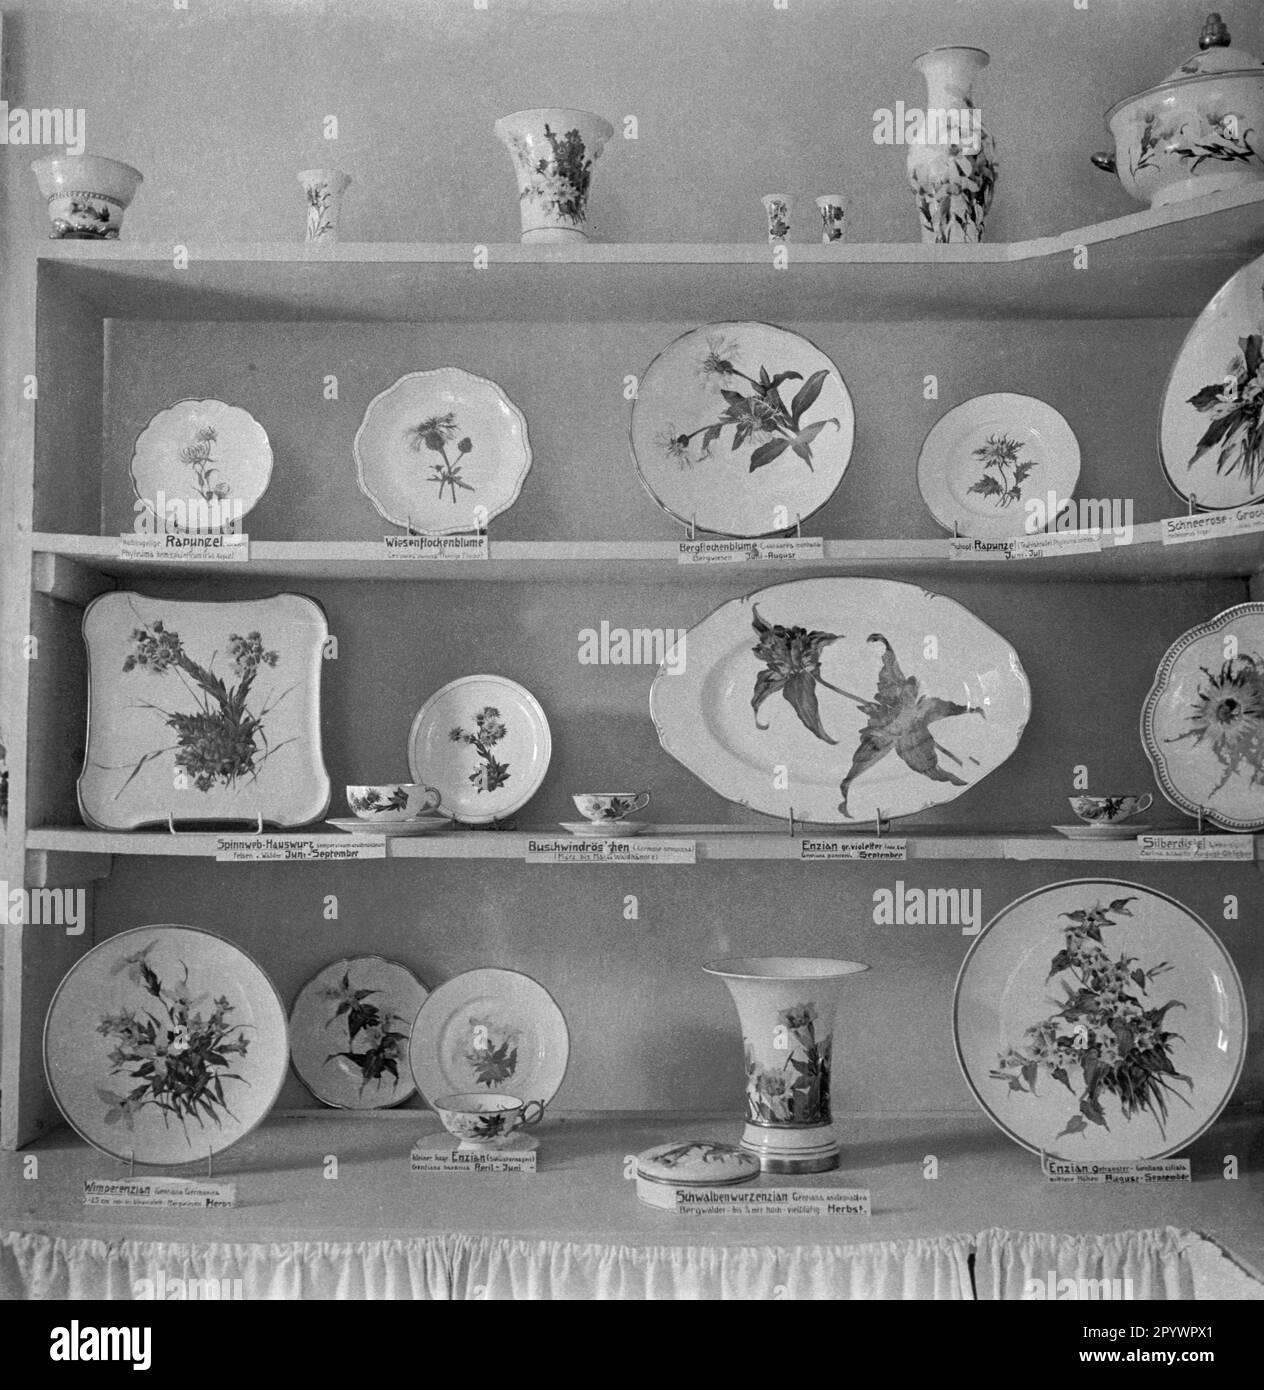 Porzellan mit Wildblumenmotiven im Berchtesgadener Land. Unbezahltes Foto von etwa 1935. Stockfoto